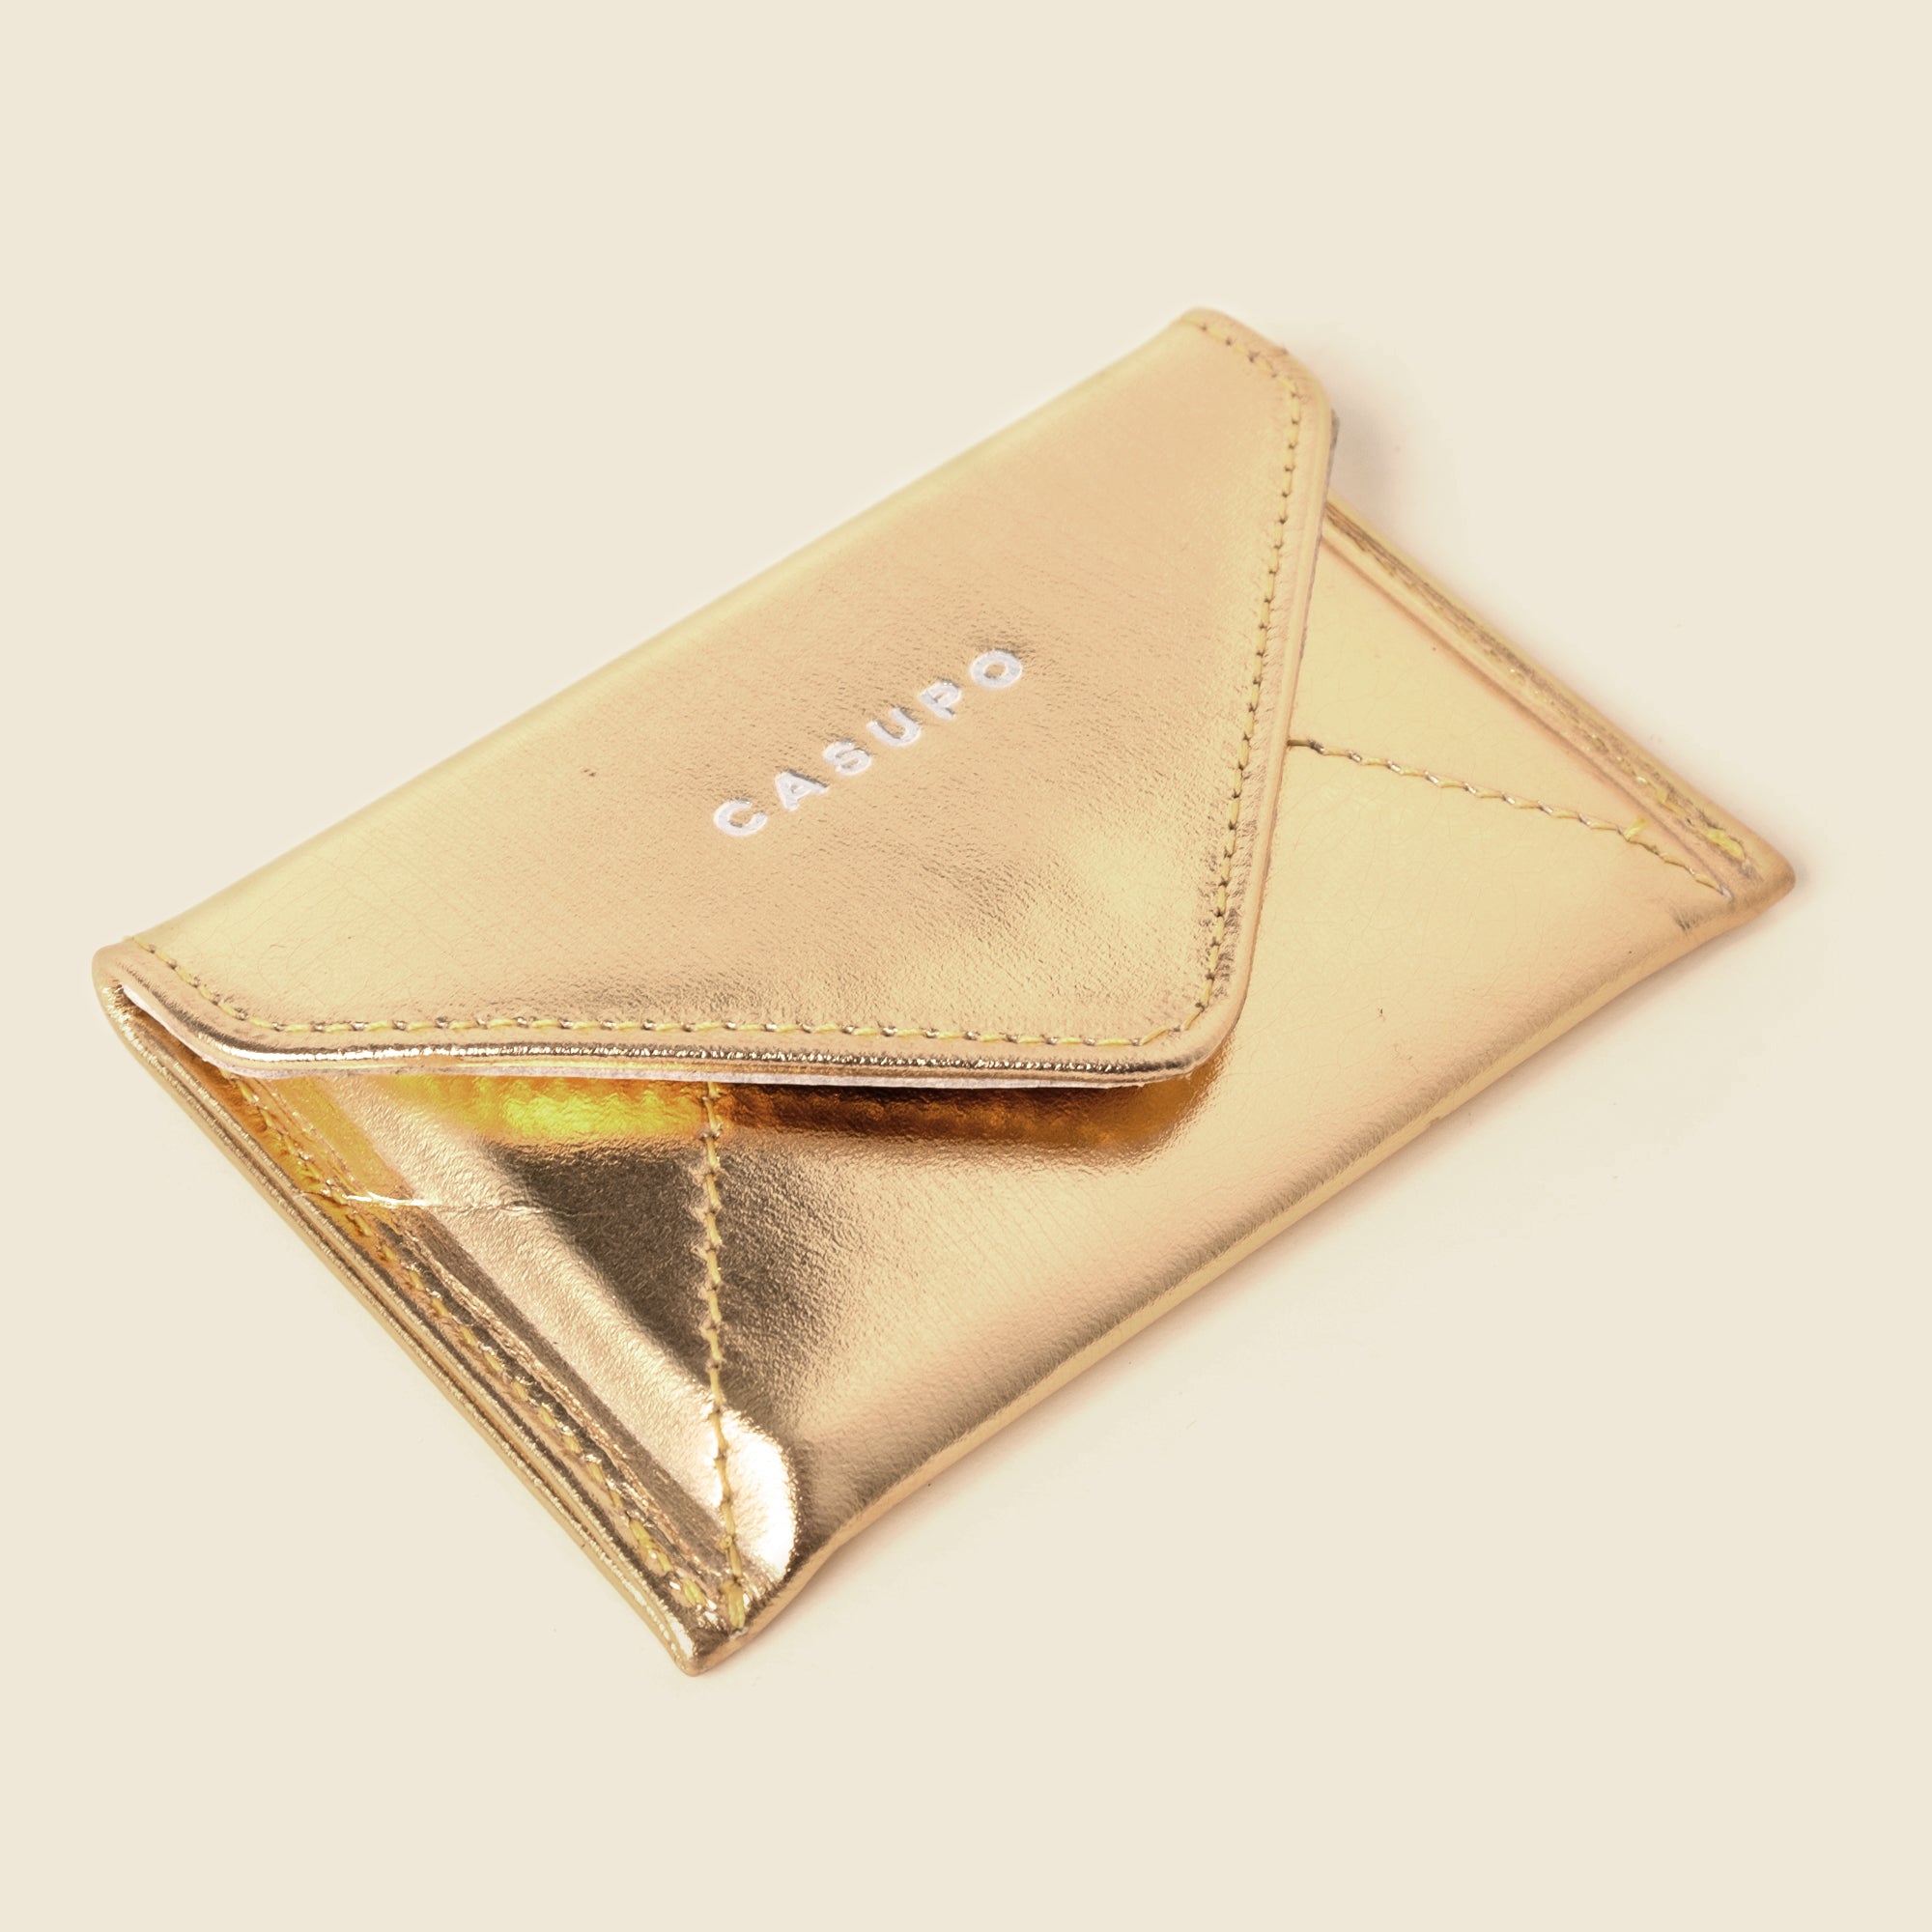 gold envelope wallet for women, concerts